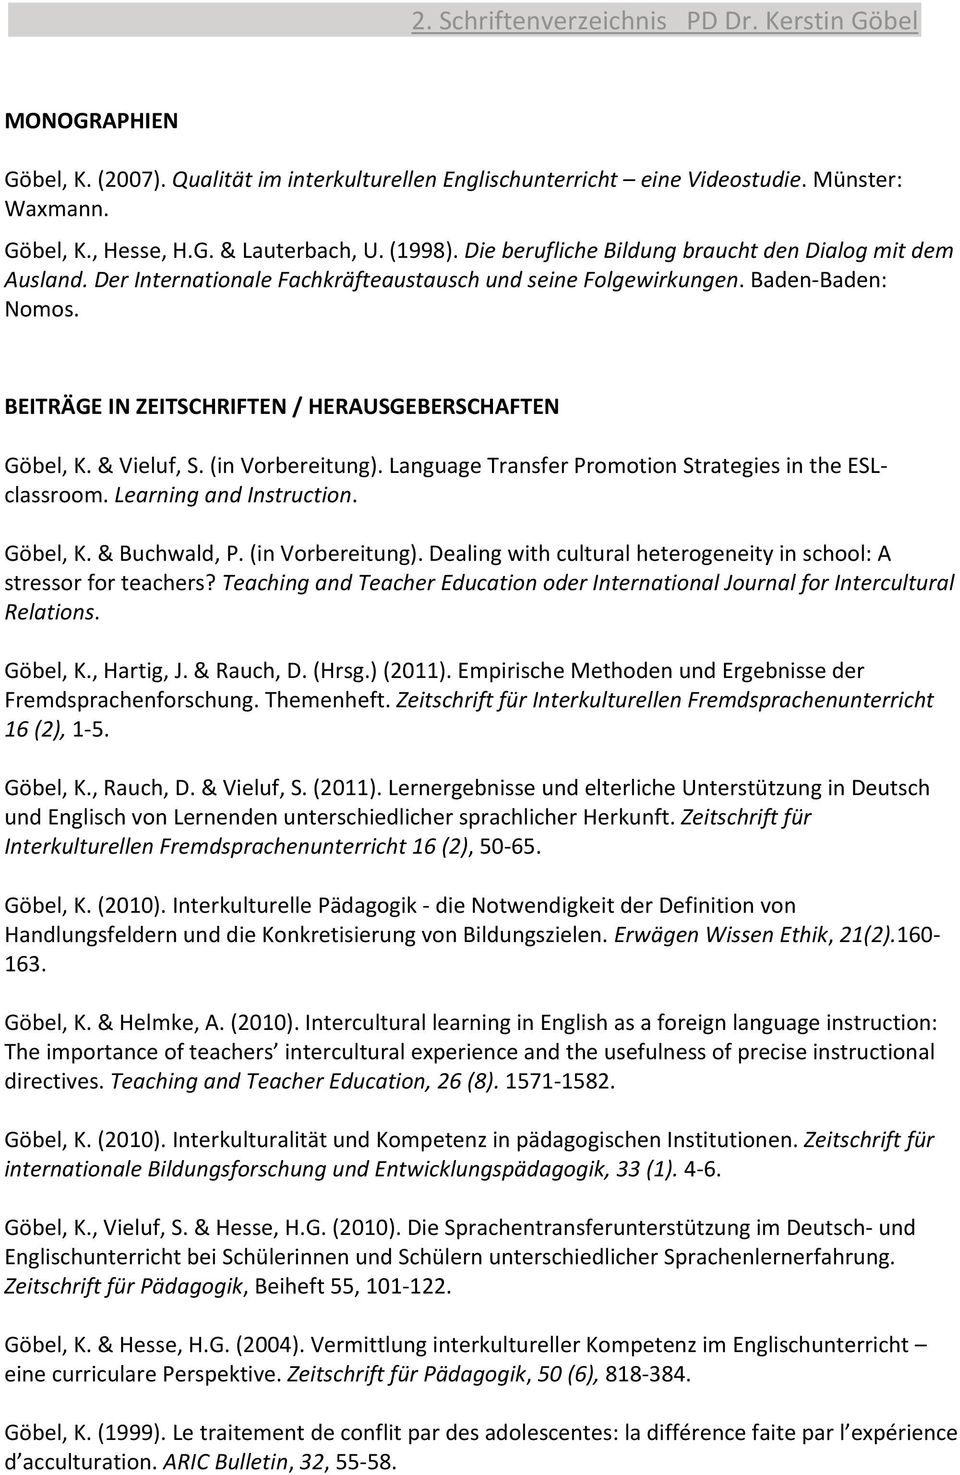 BEITRÄGE IN ZEITSCHRIFTEN / HERAUSGEBERSCHAFTEN Göbel, K. & Vieluf, S. (in Vorbereitung). Language Transfer Promotion Strategies in the ESLclassroom. Learning and Instruction. Göbel, K. & Buchwald, P.